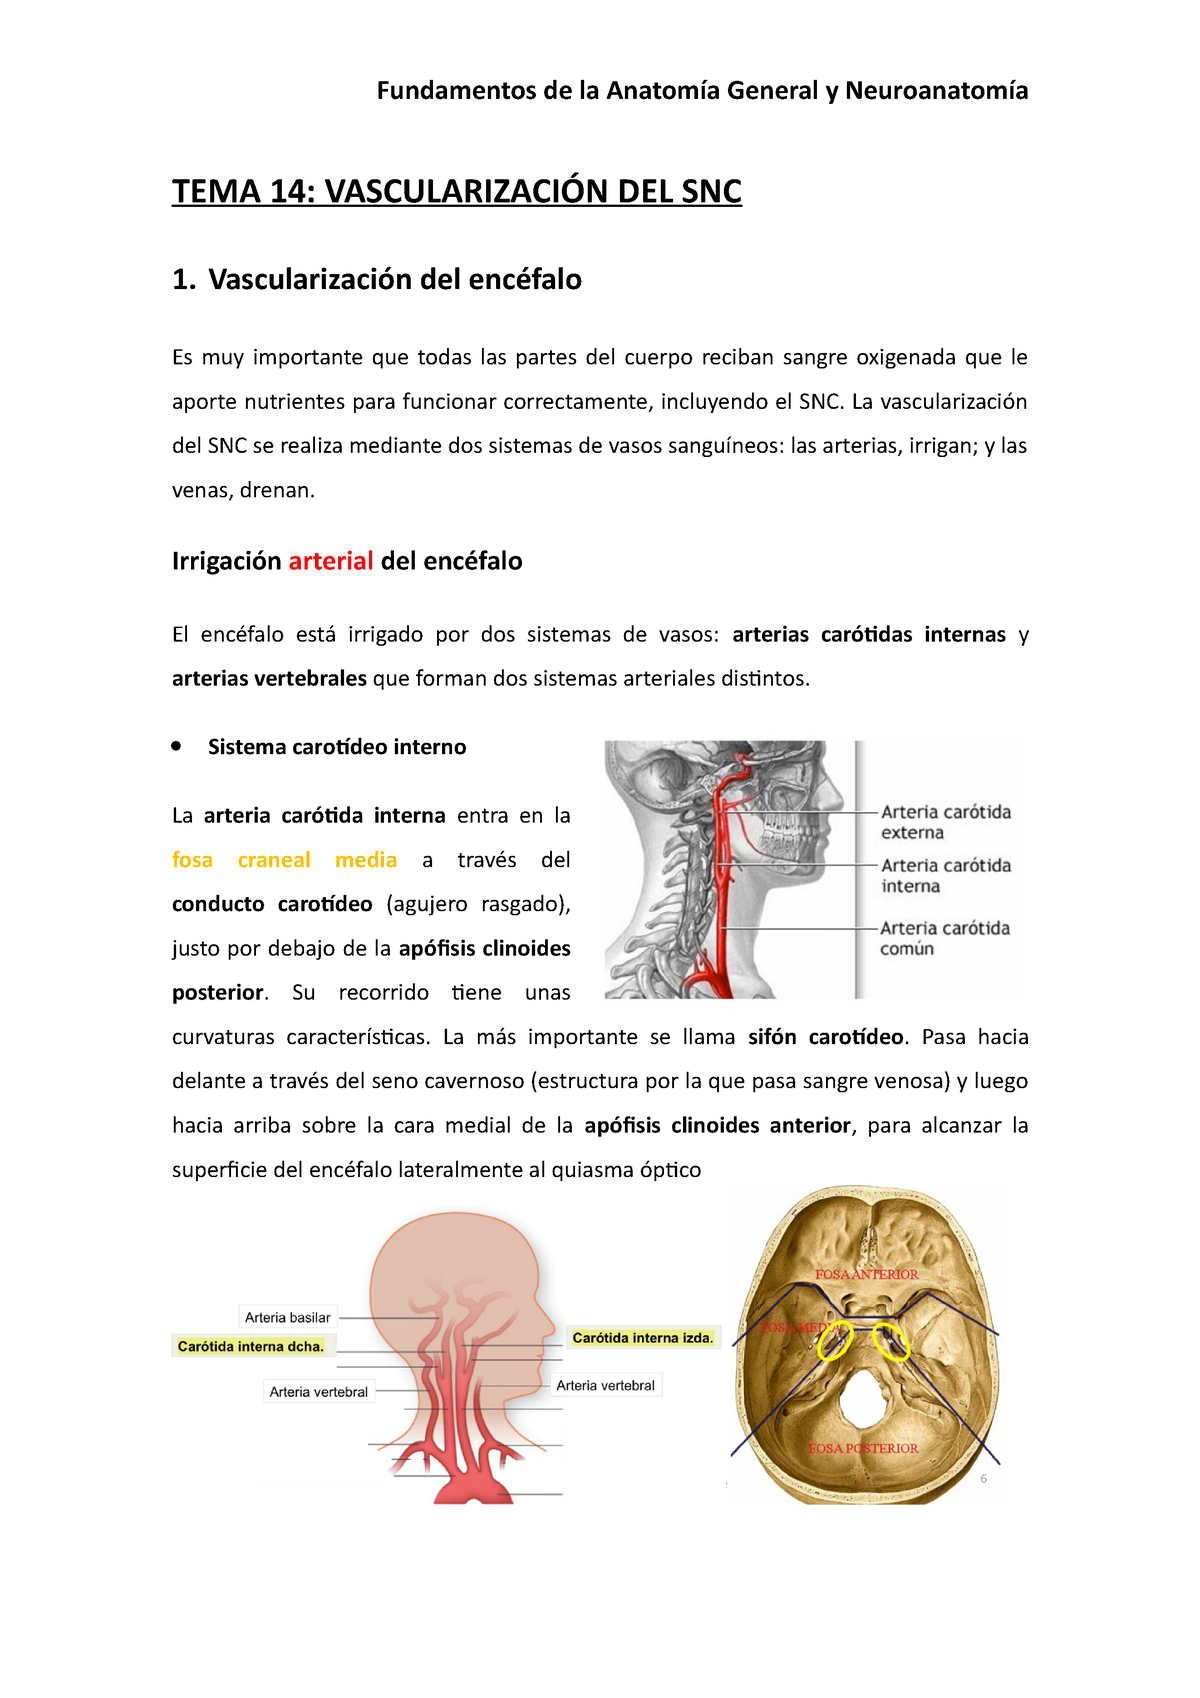 SOLUTION: Vascularizaci n arterial y venosa del encefalo anatom a -  Studypool